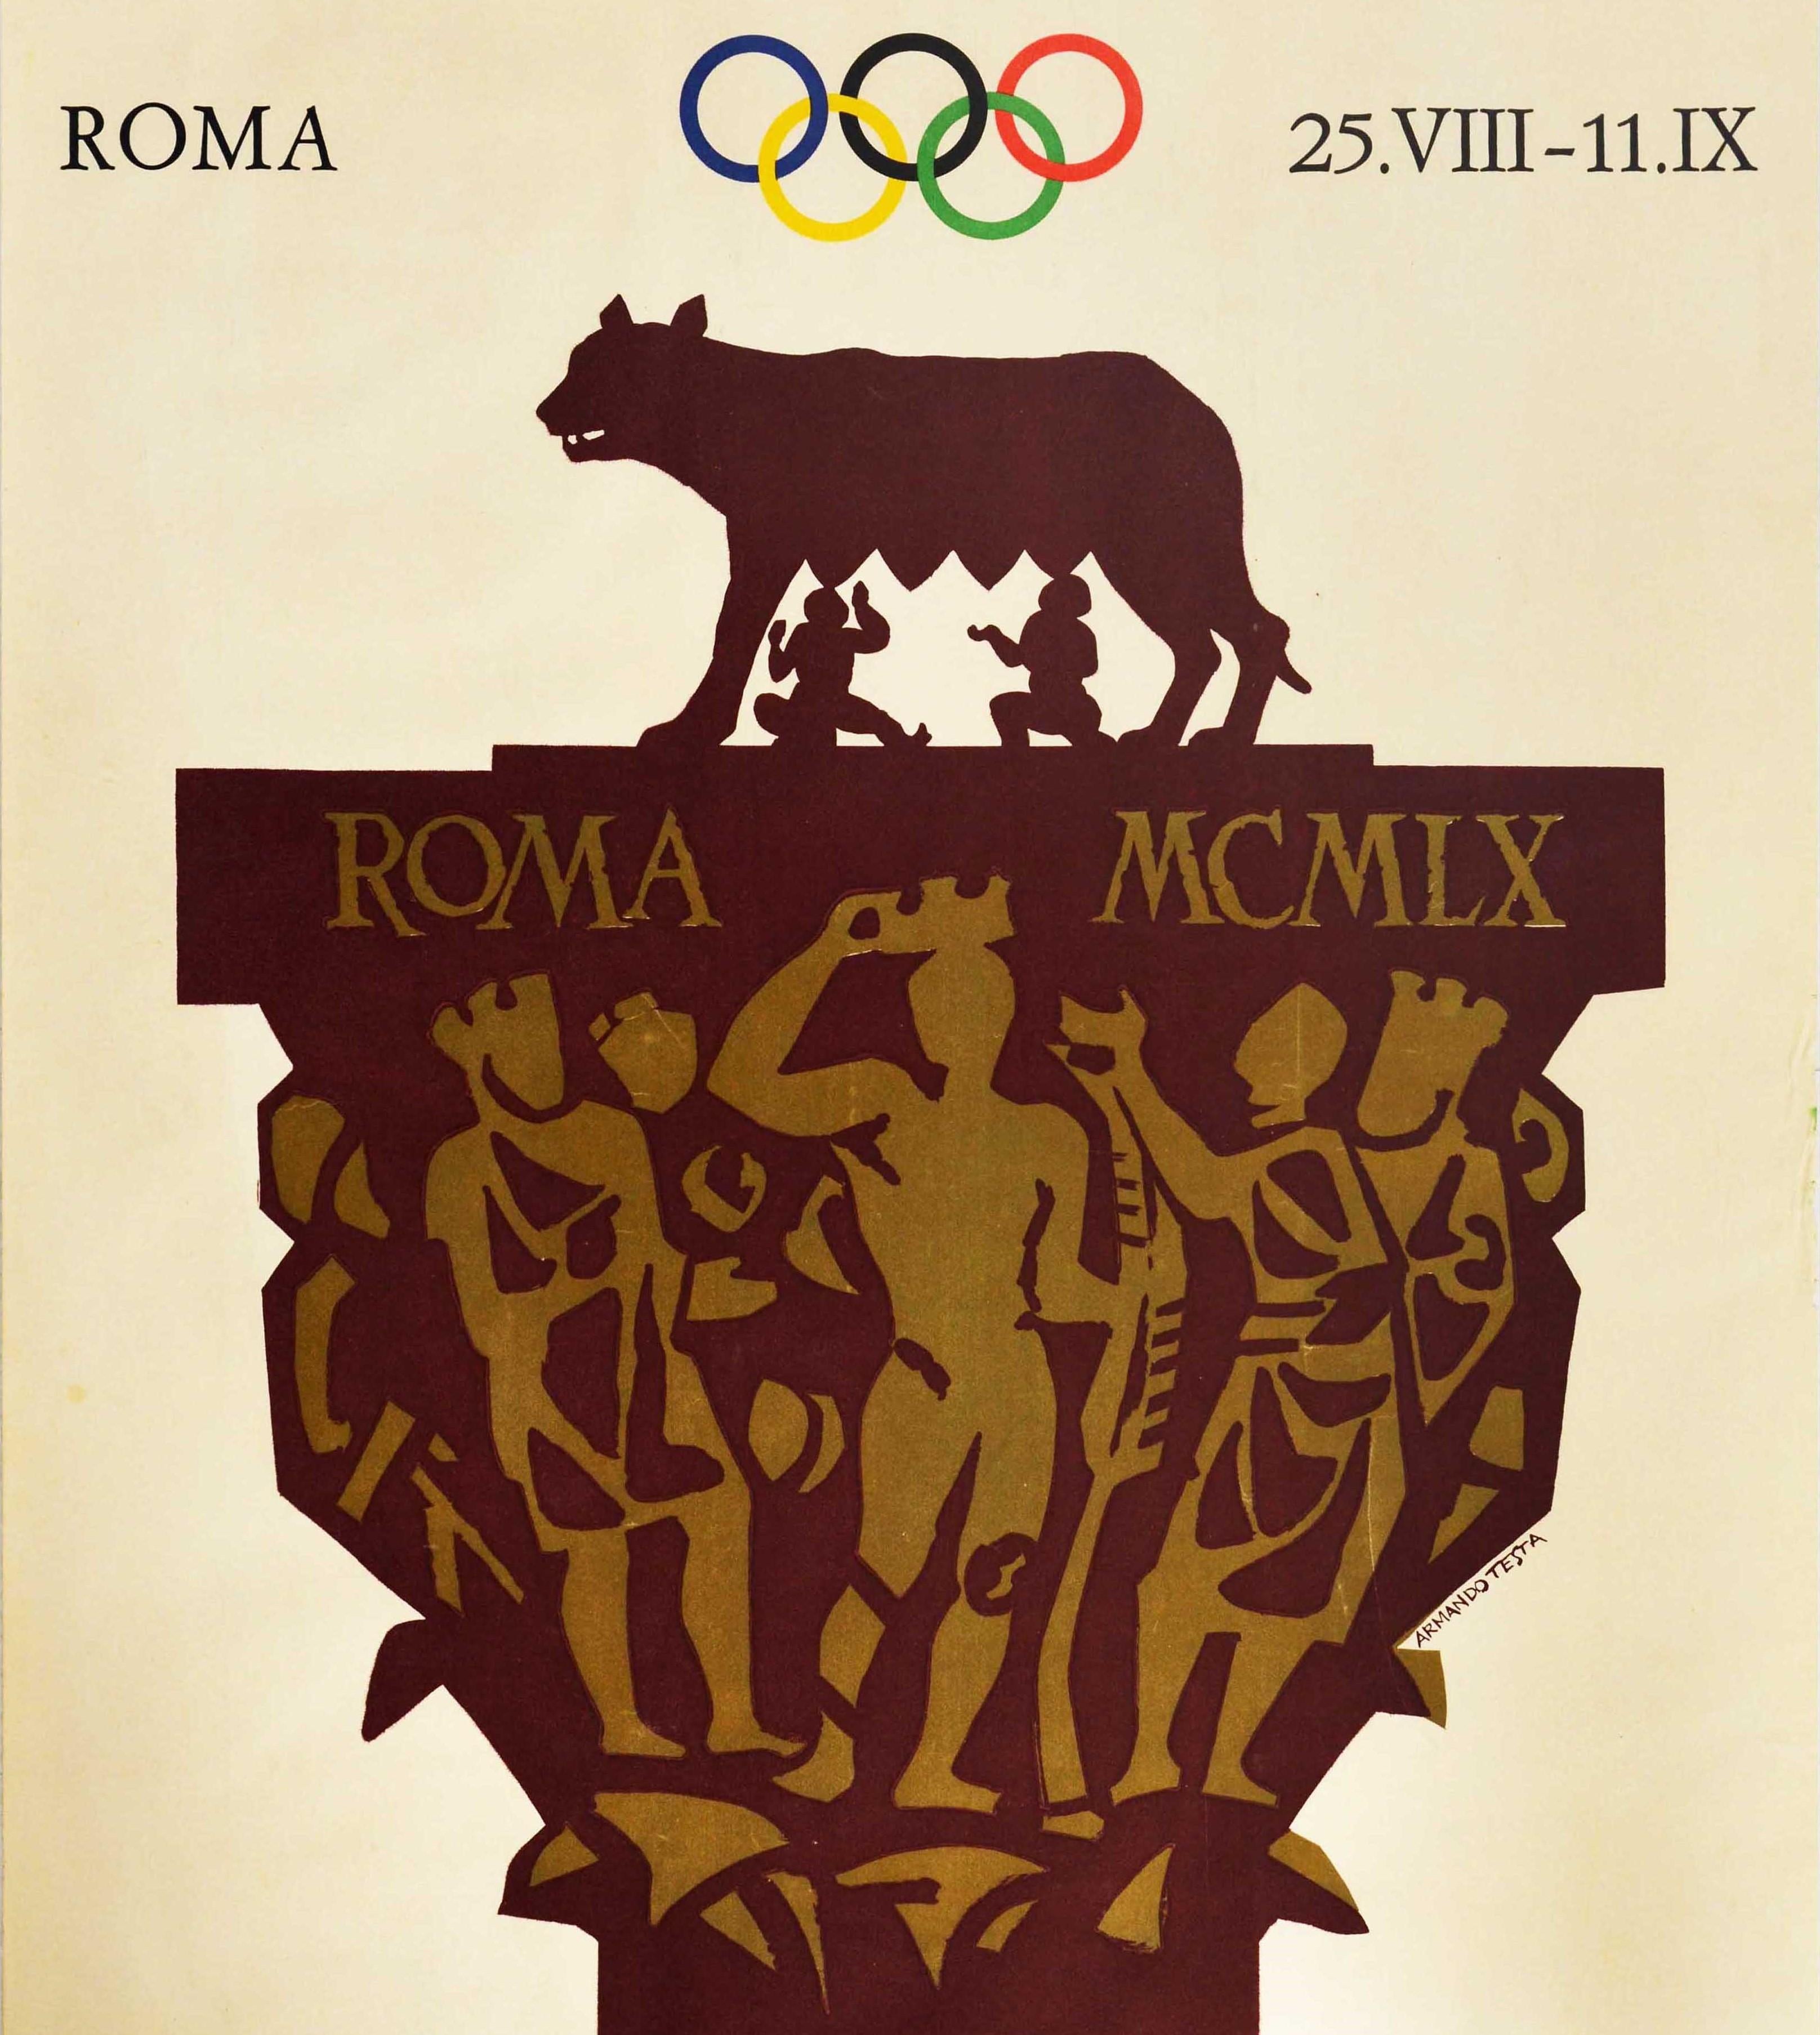 Original-Sportplakat für die XVII Olympischen Spiele Roma 25.VIII-11.IX mit einem großartigen Entwurf von Armando Testa (1917-1992), der die Zwillingsbrüder Romulus und Remus zeigt, die vom Kapitolinischen Wolf gesäugt werden (die antike Geschichte